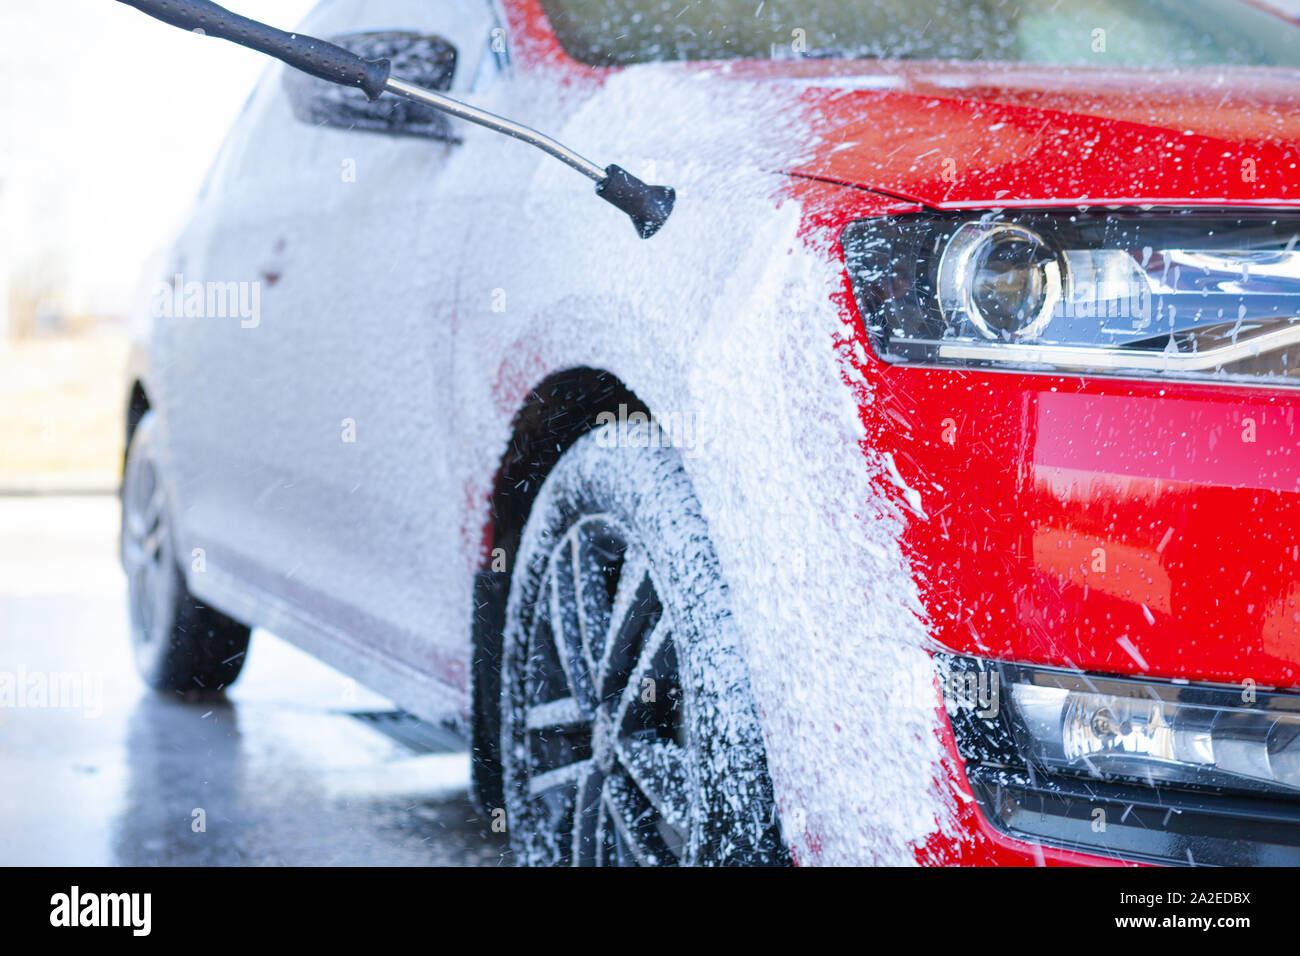 Nettoyage de voiture. Laver voiture rouge avec du savon. Le lavage à l'eau  haute pression Photo Stock - Alamy